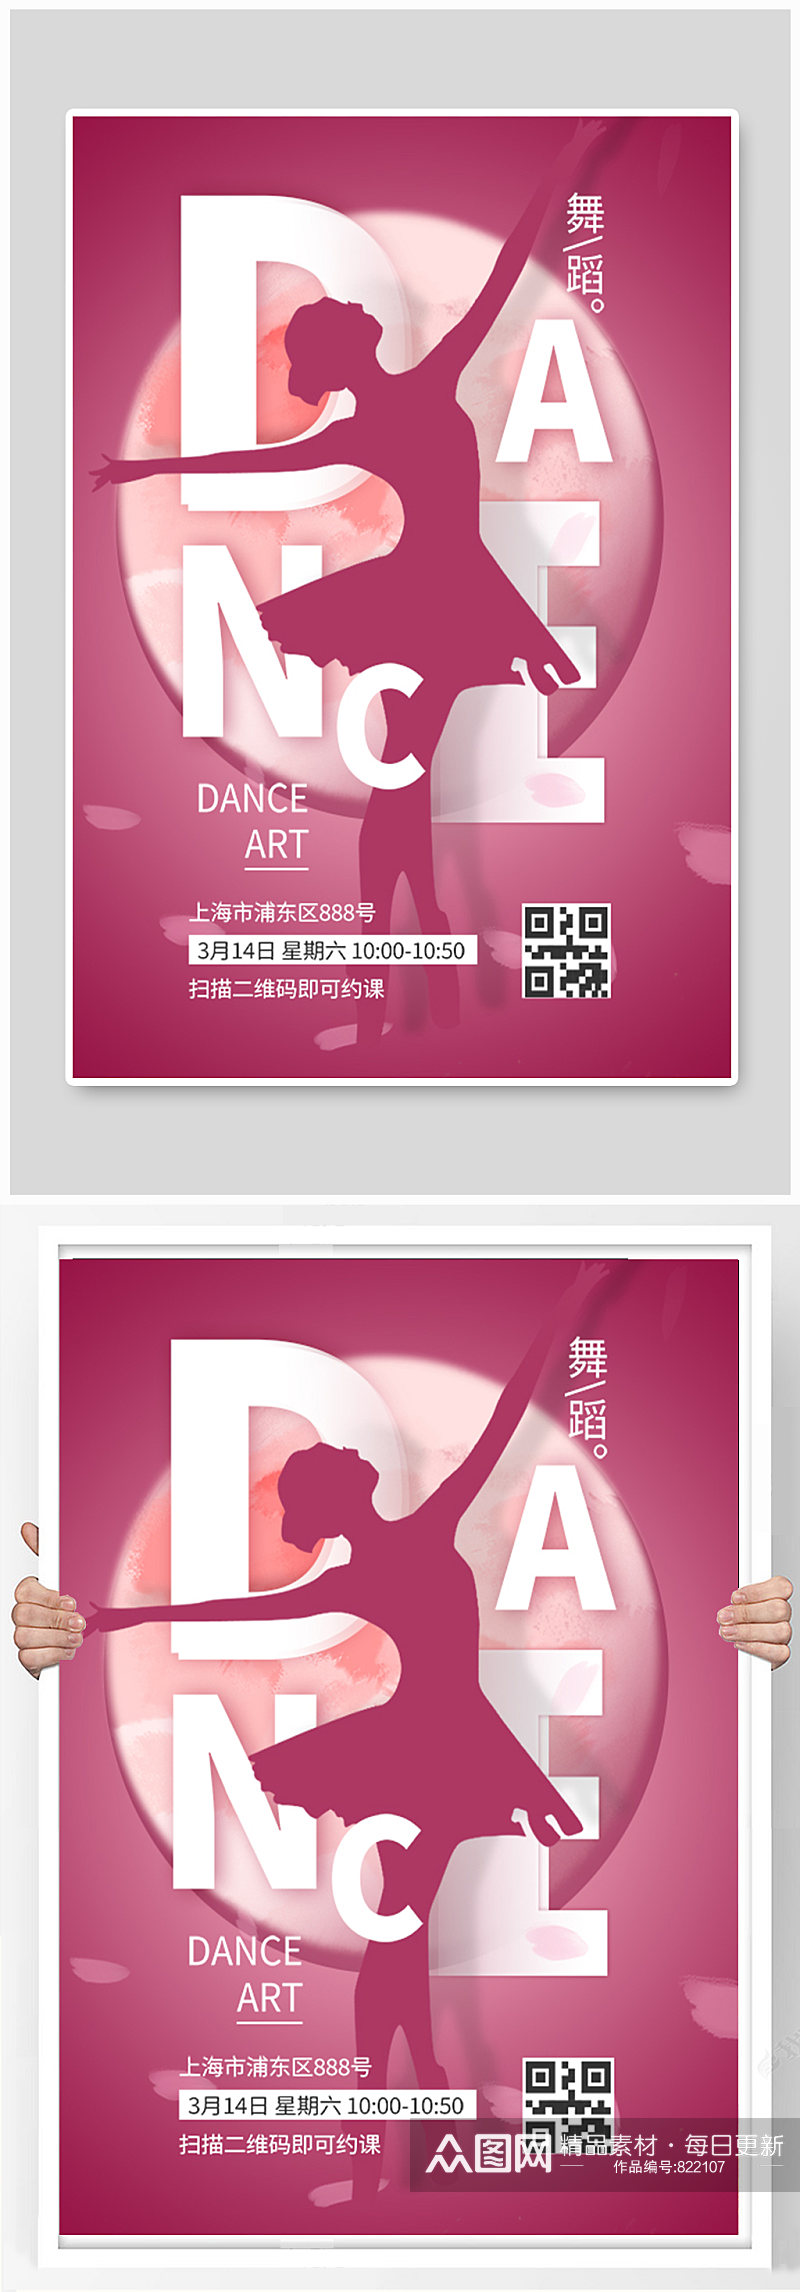 舞蹈培训课程粉色简约招生宣传海报素材